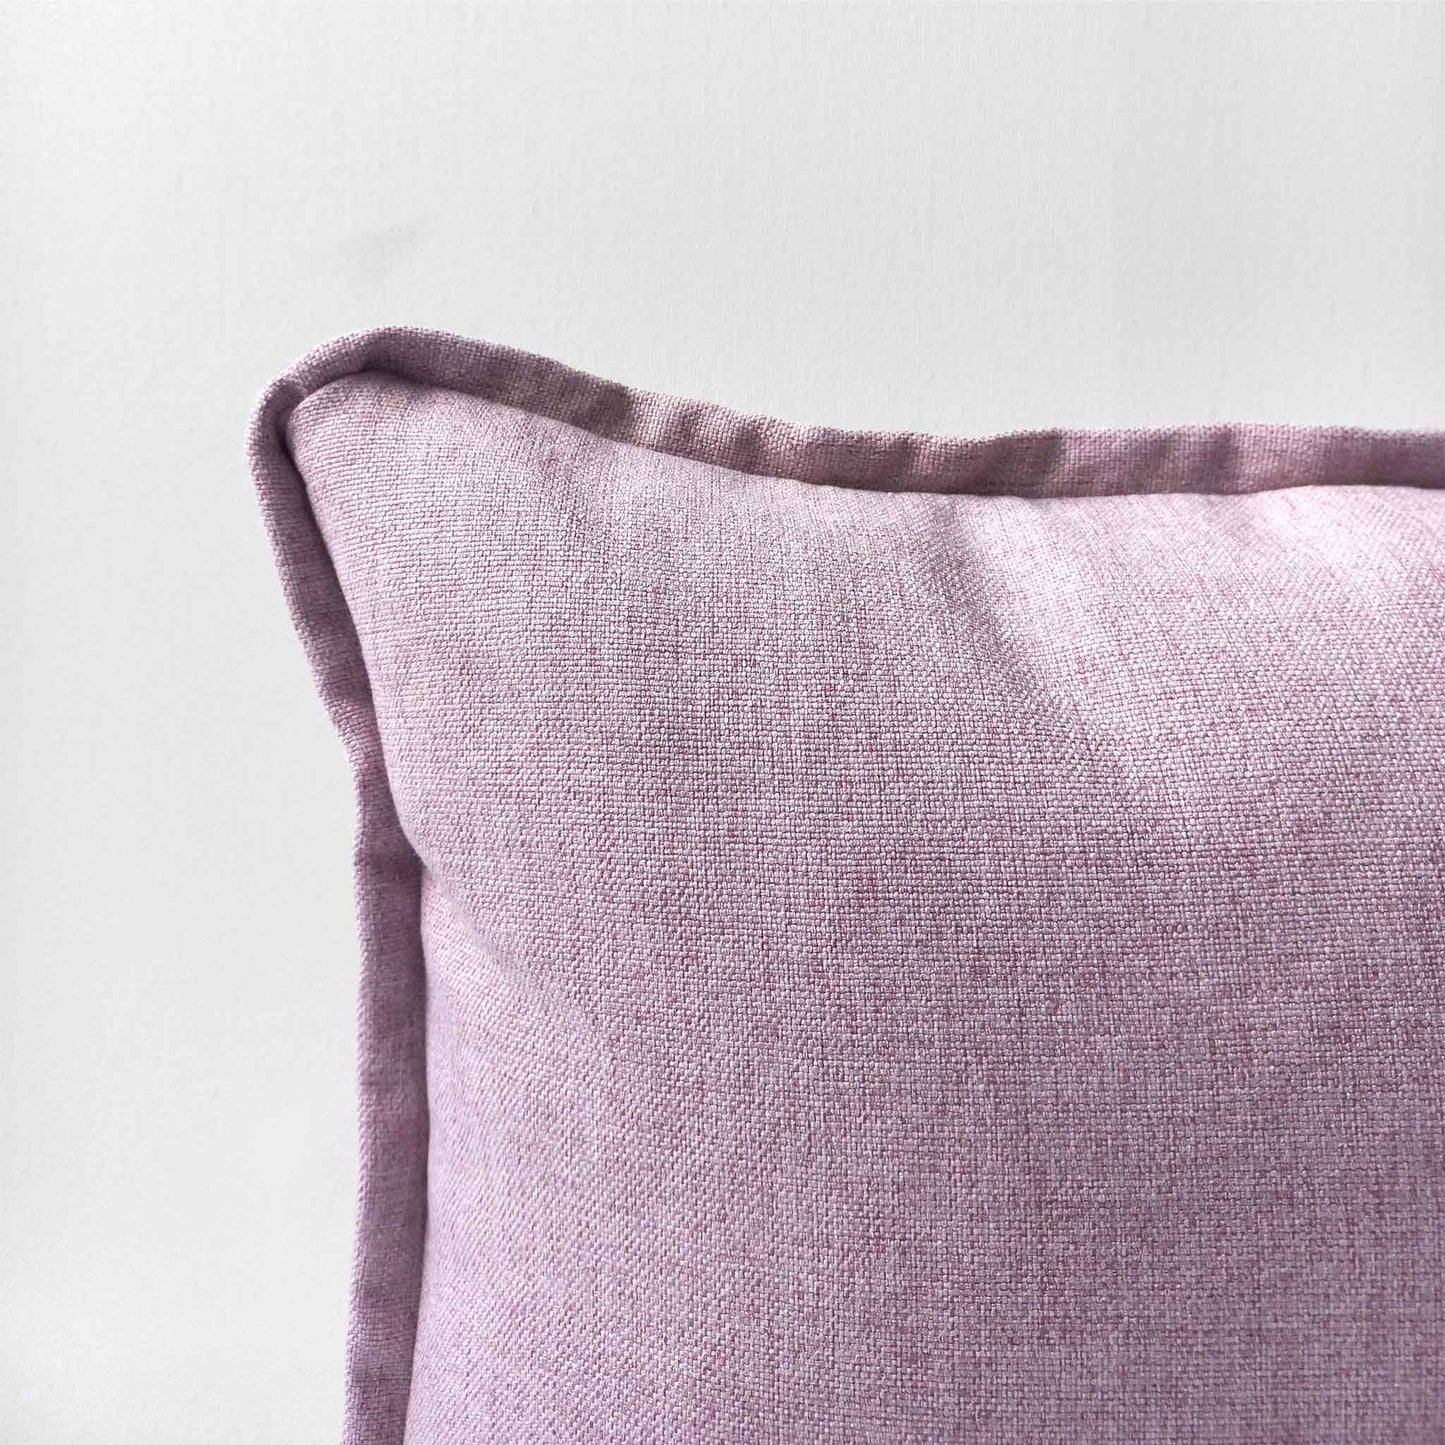 Decorative cushion detail